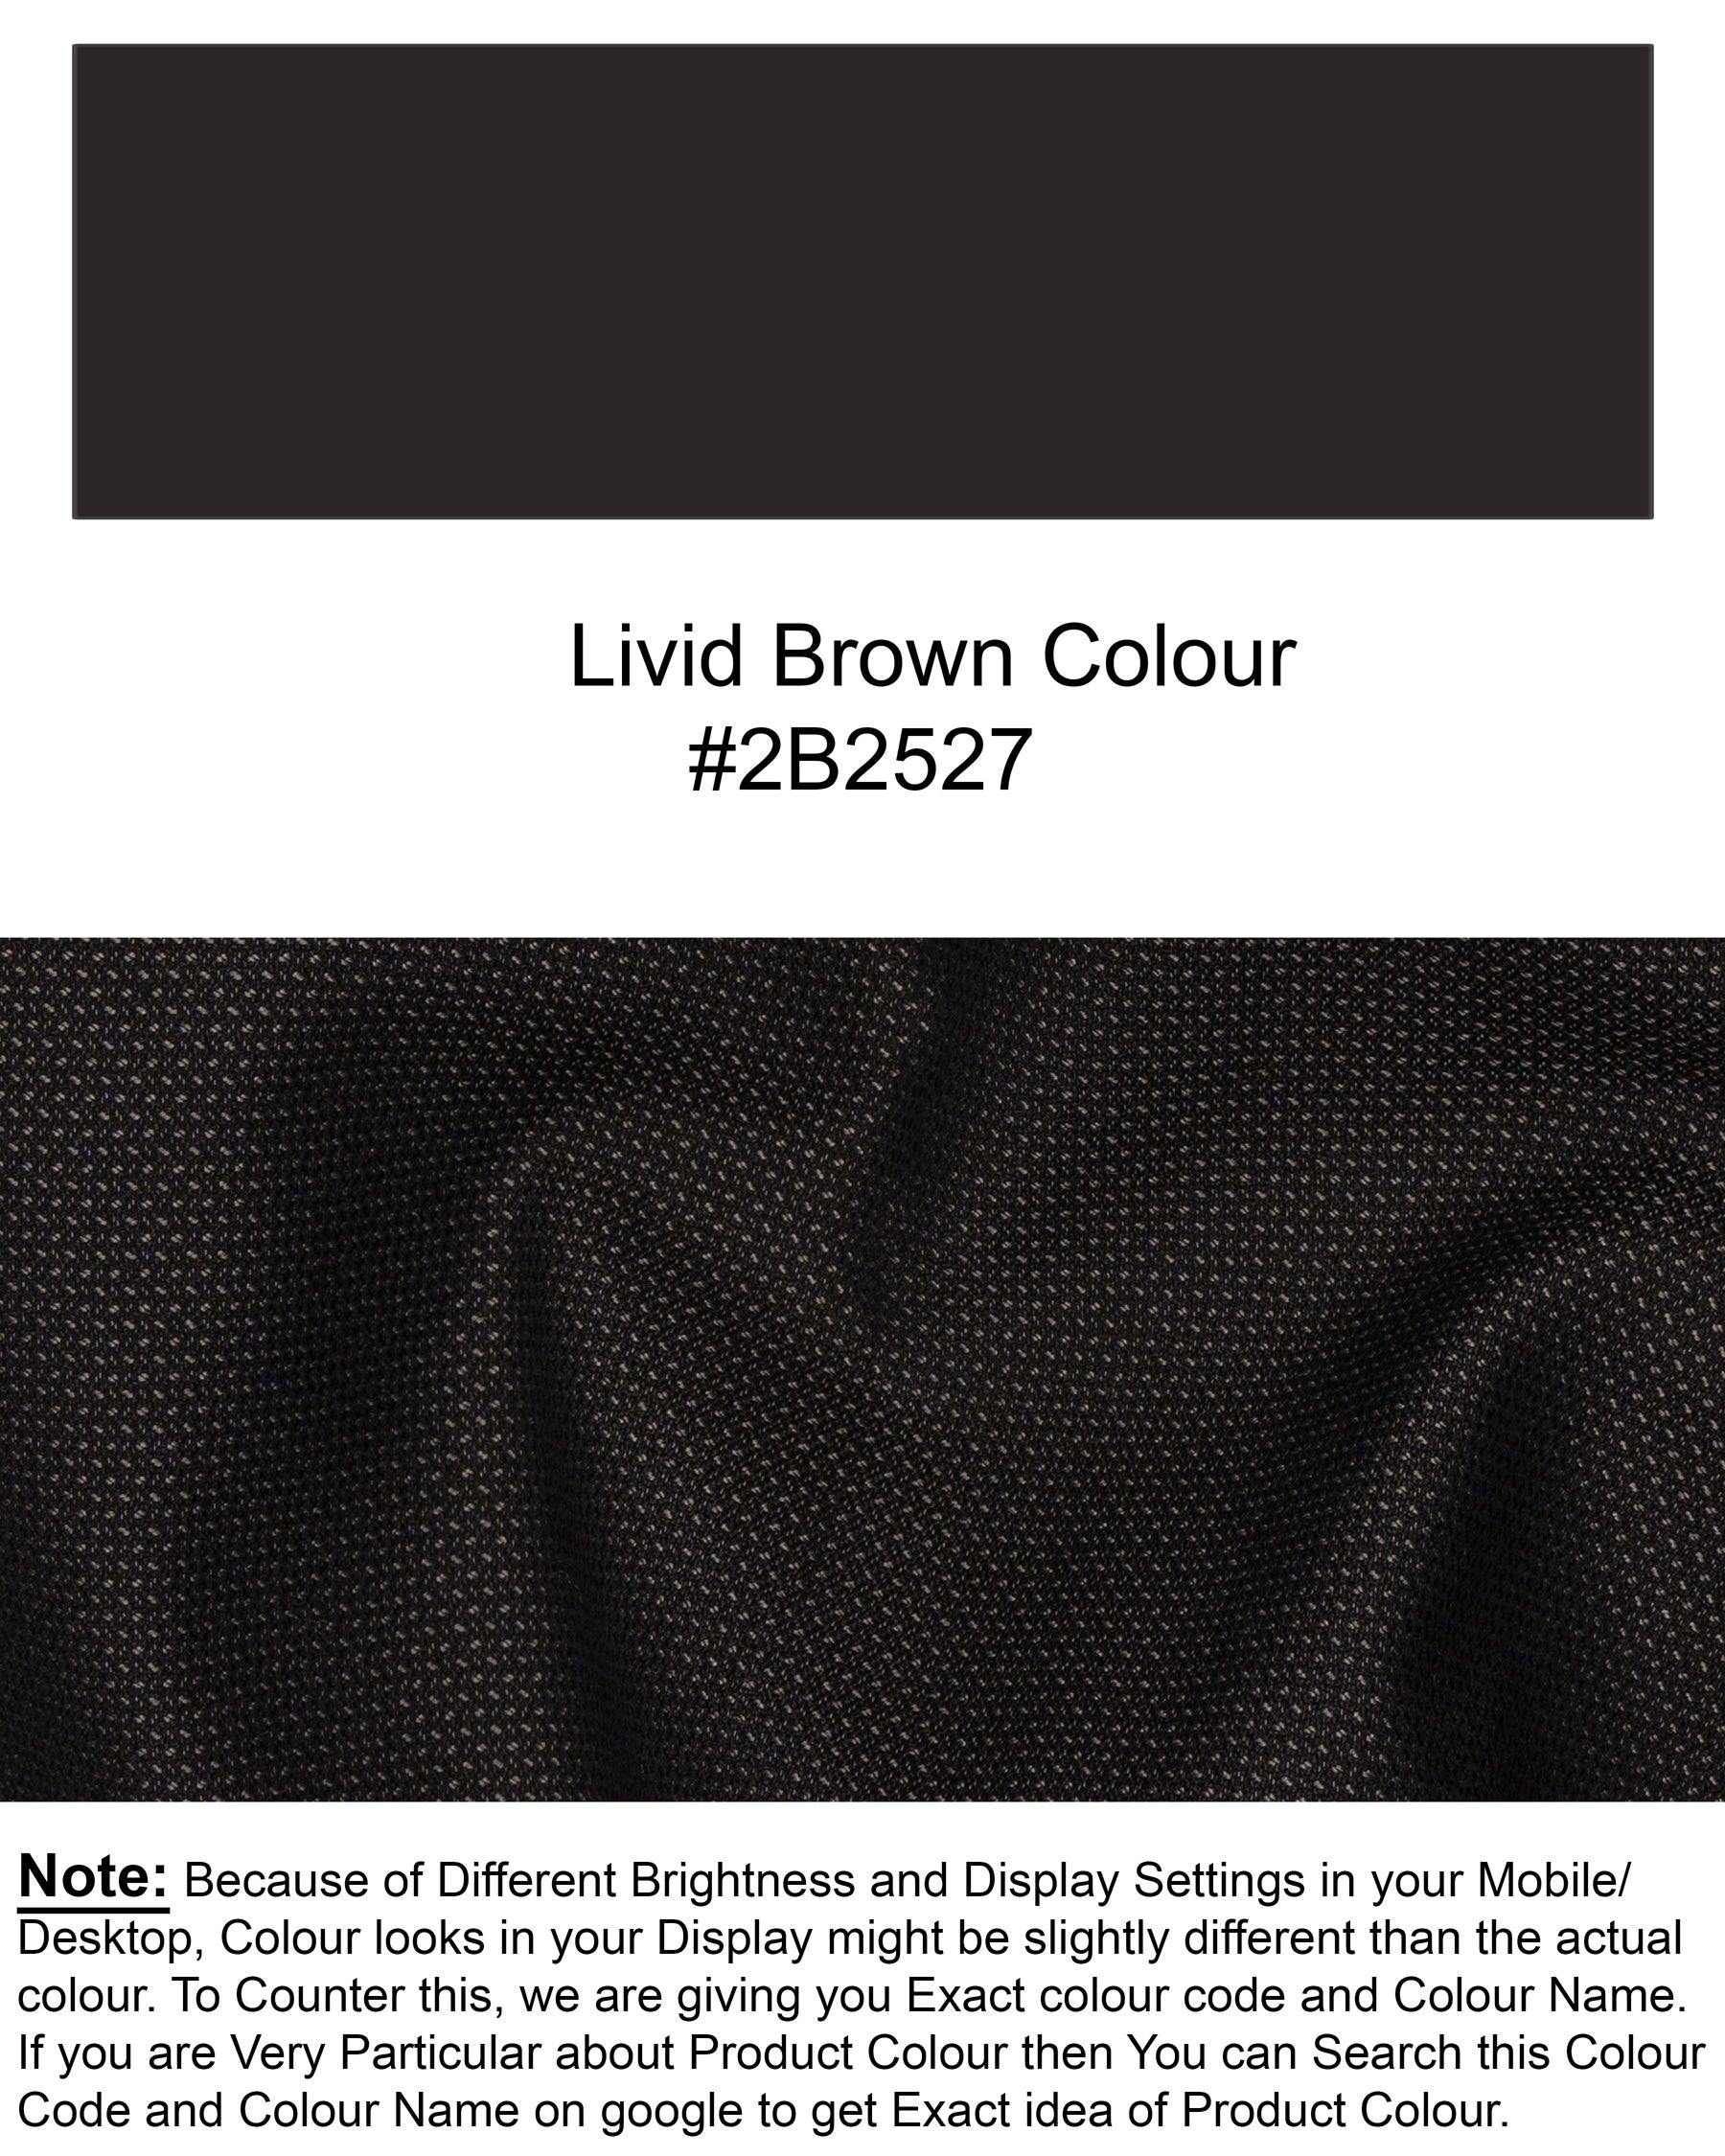 Blackish Brown Wool Rich Pant T1526-28, T1526-30, T1526-32, T1526-34, T1526-36, T1526-38, T1526-40, T1526-42, T1526-44